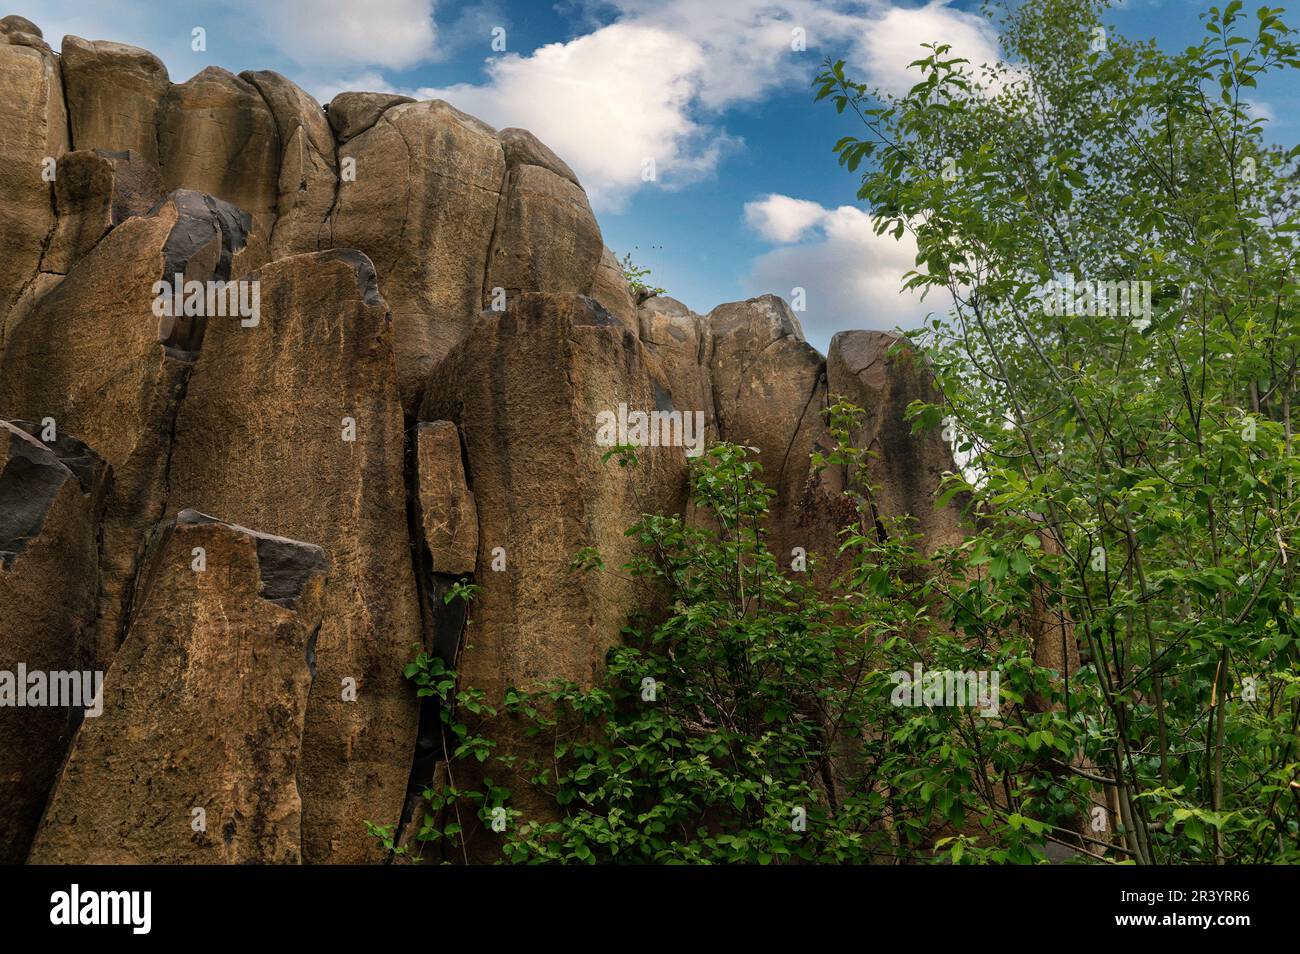 Pilares de basalto en una cantera abandonada. Cantera de basalto abandonada como monumento natural con columnas de basalto expuestas. Foto de stock